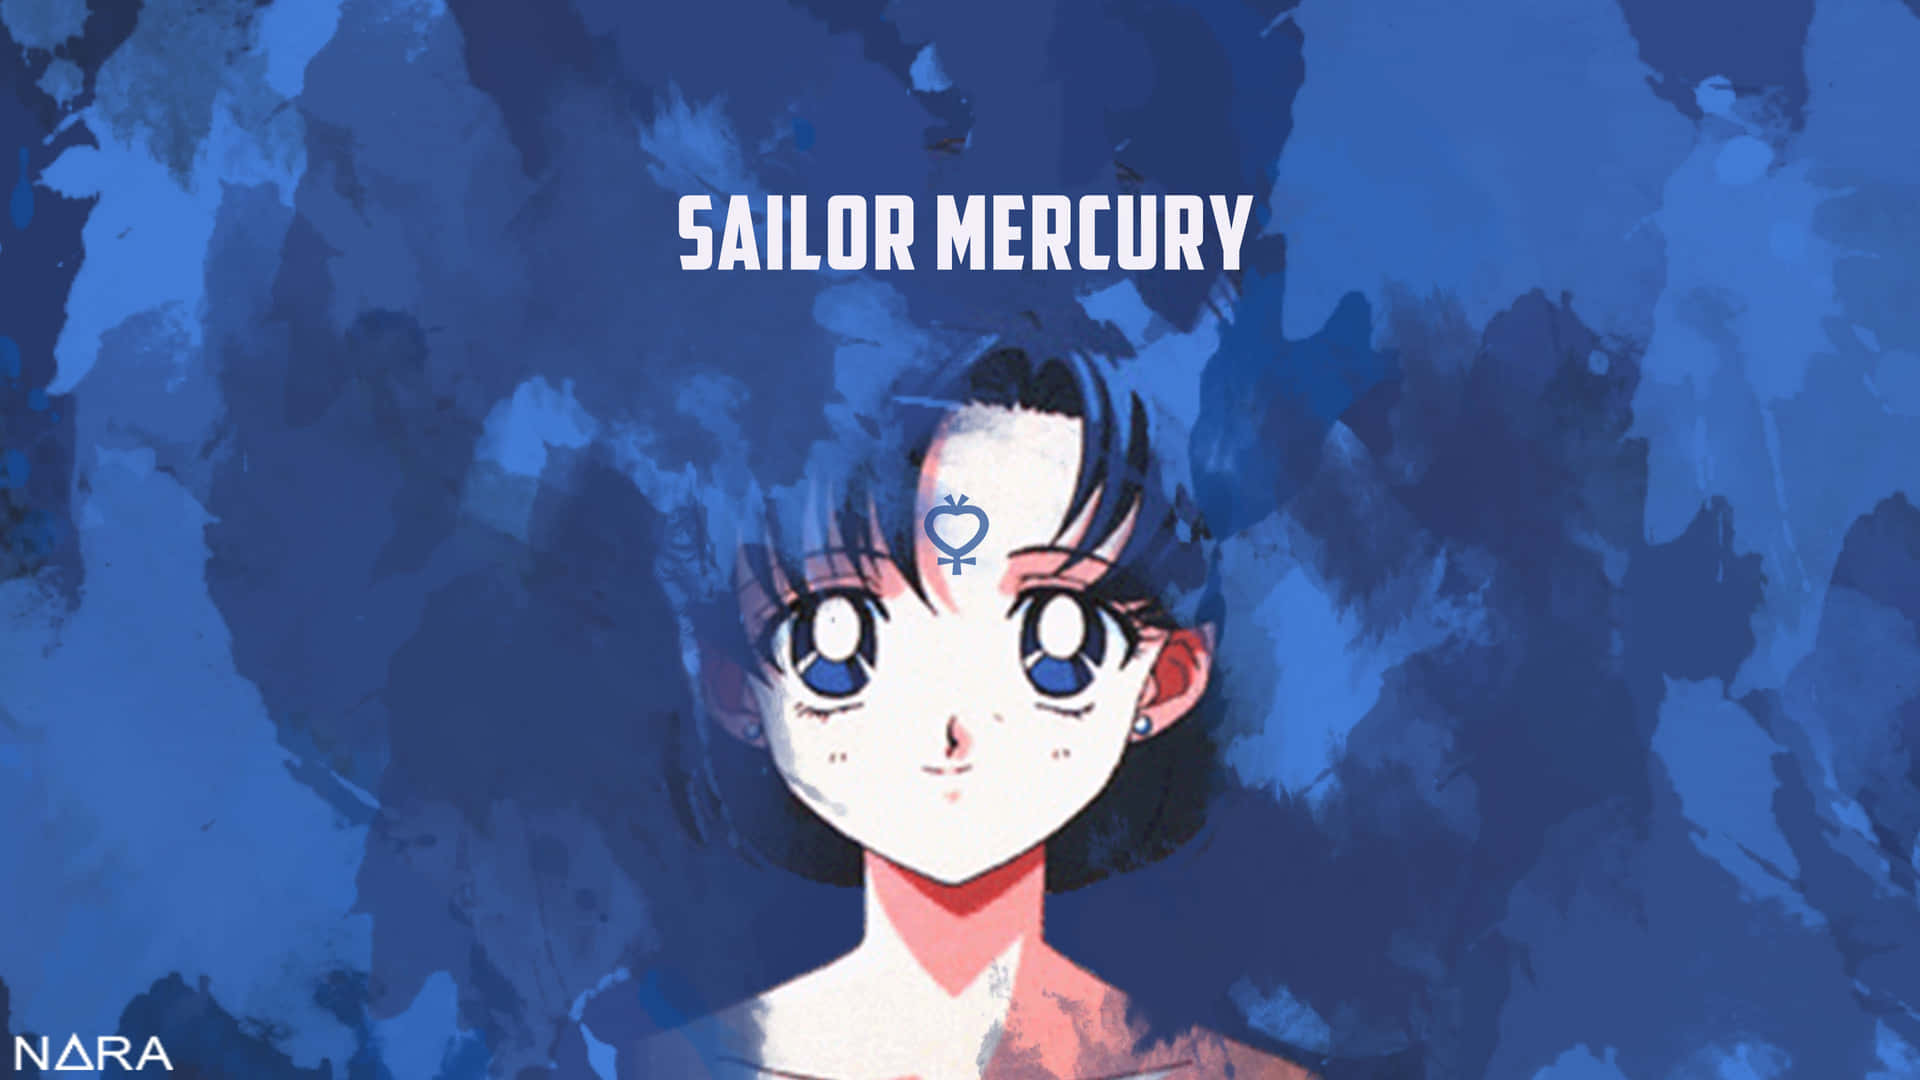 Sailormercury Kæmper For Retfærdighed. Wallpaper